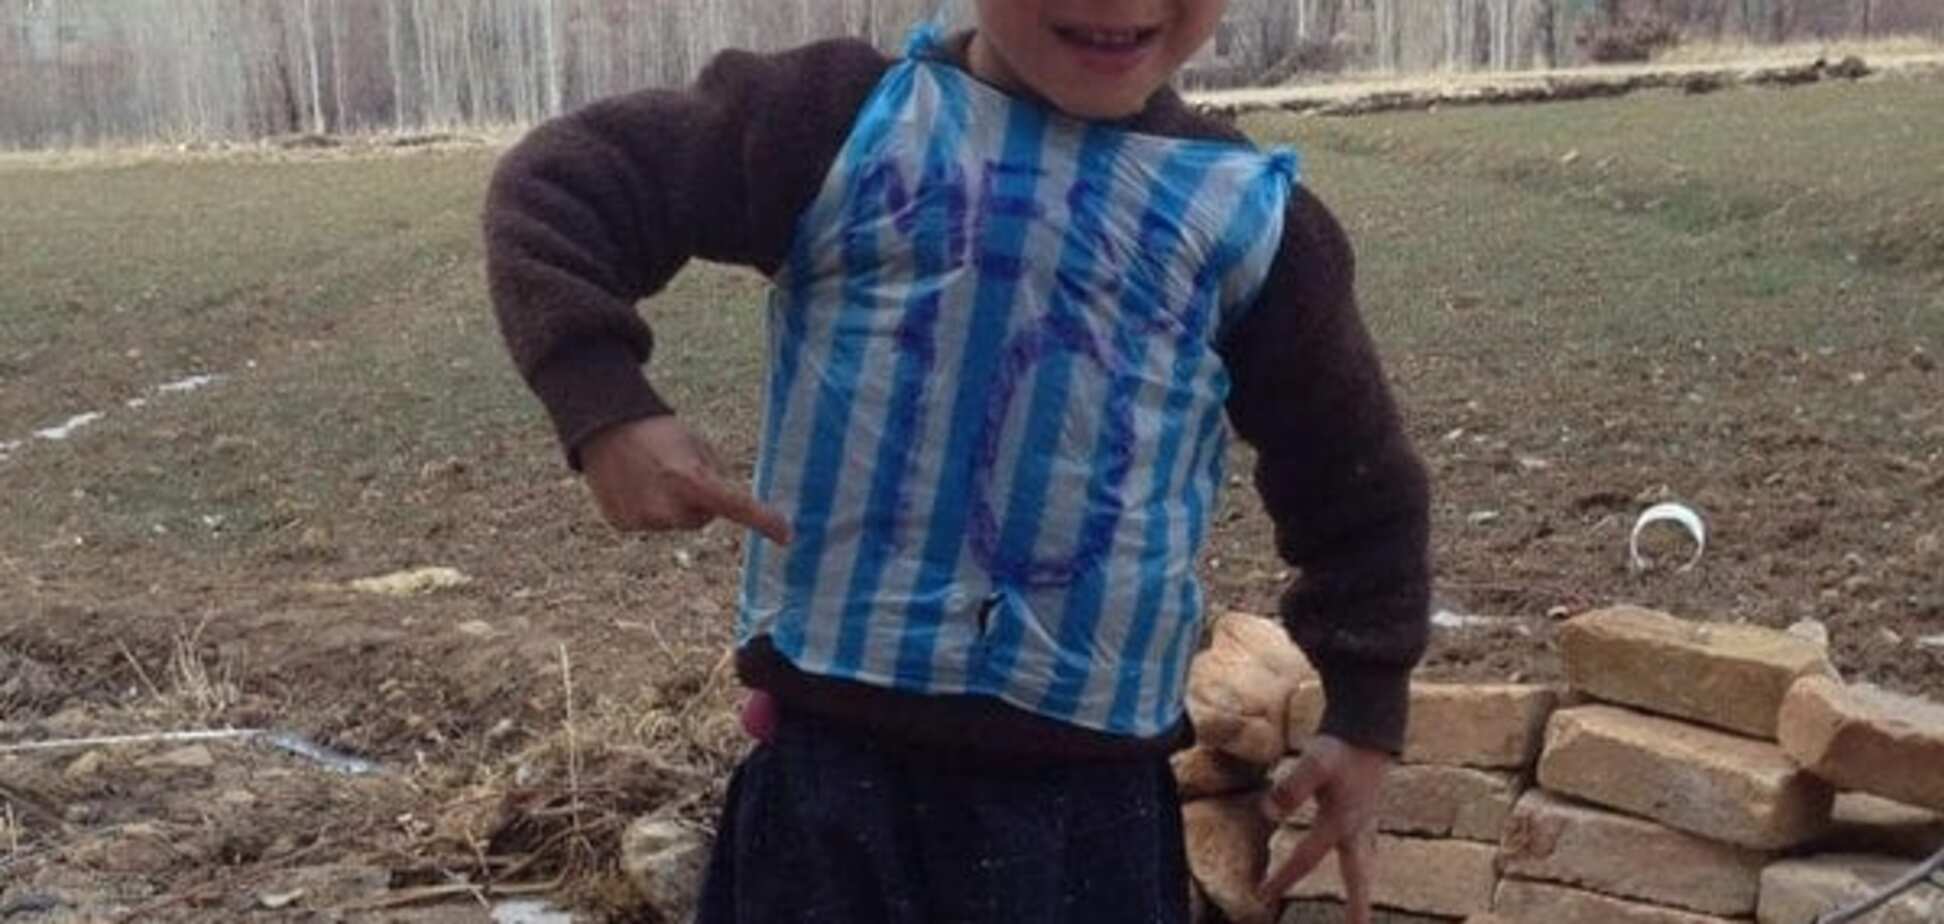 Нашелся мальчик, сделавший футболку Месси из полиэтиленового пакета: фото фаната 